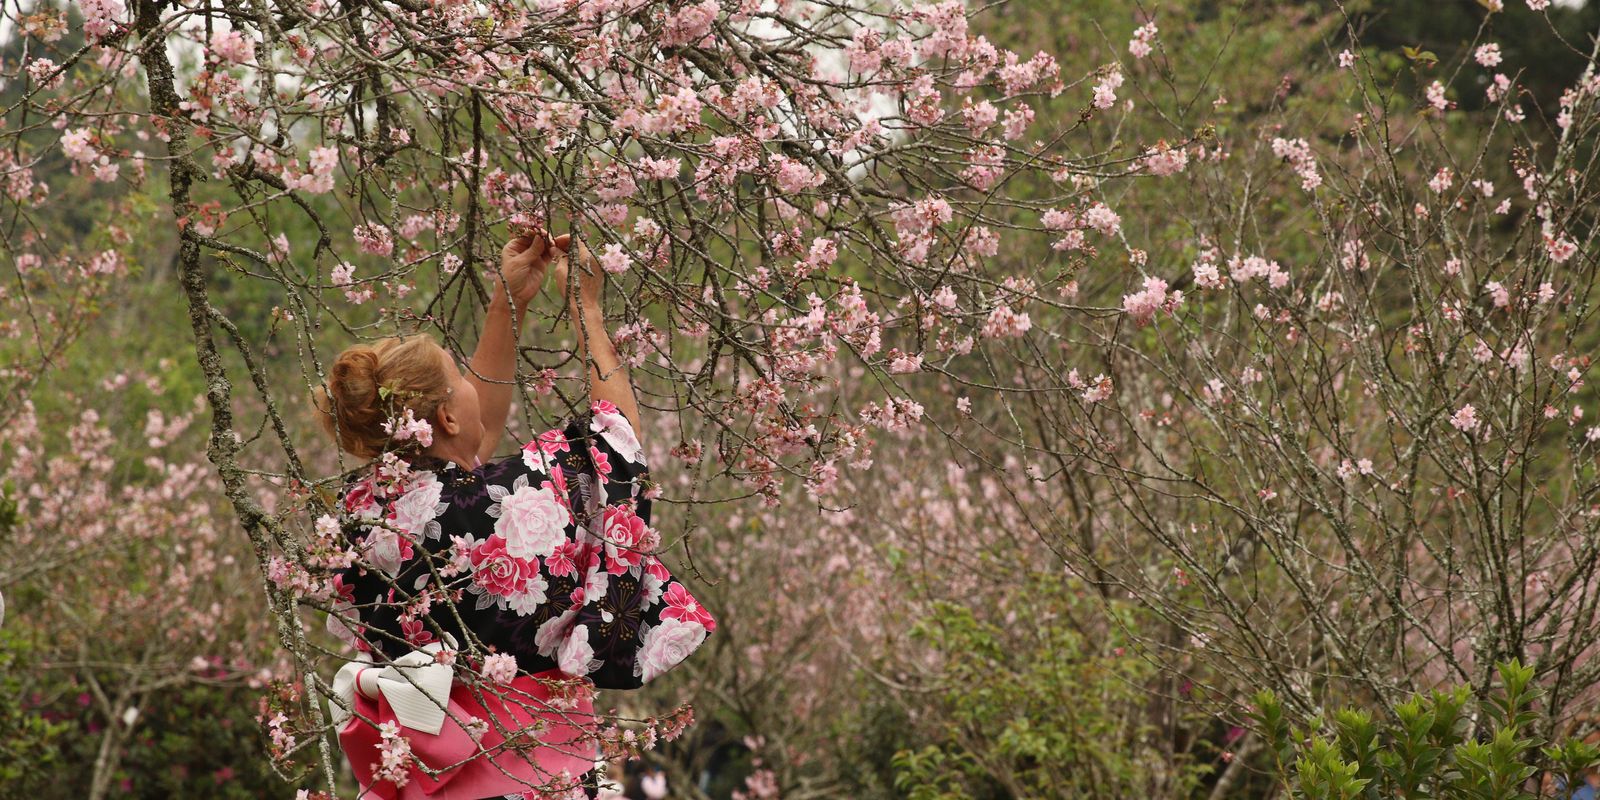 Festa das Cerejeiras retoma formato presencial